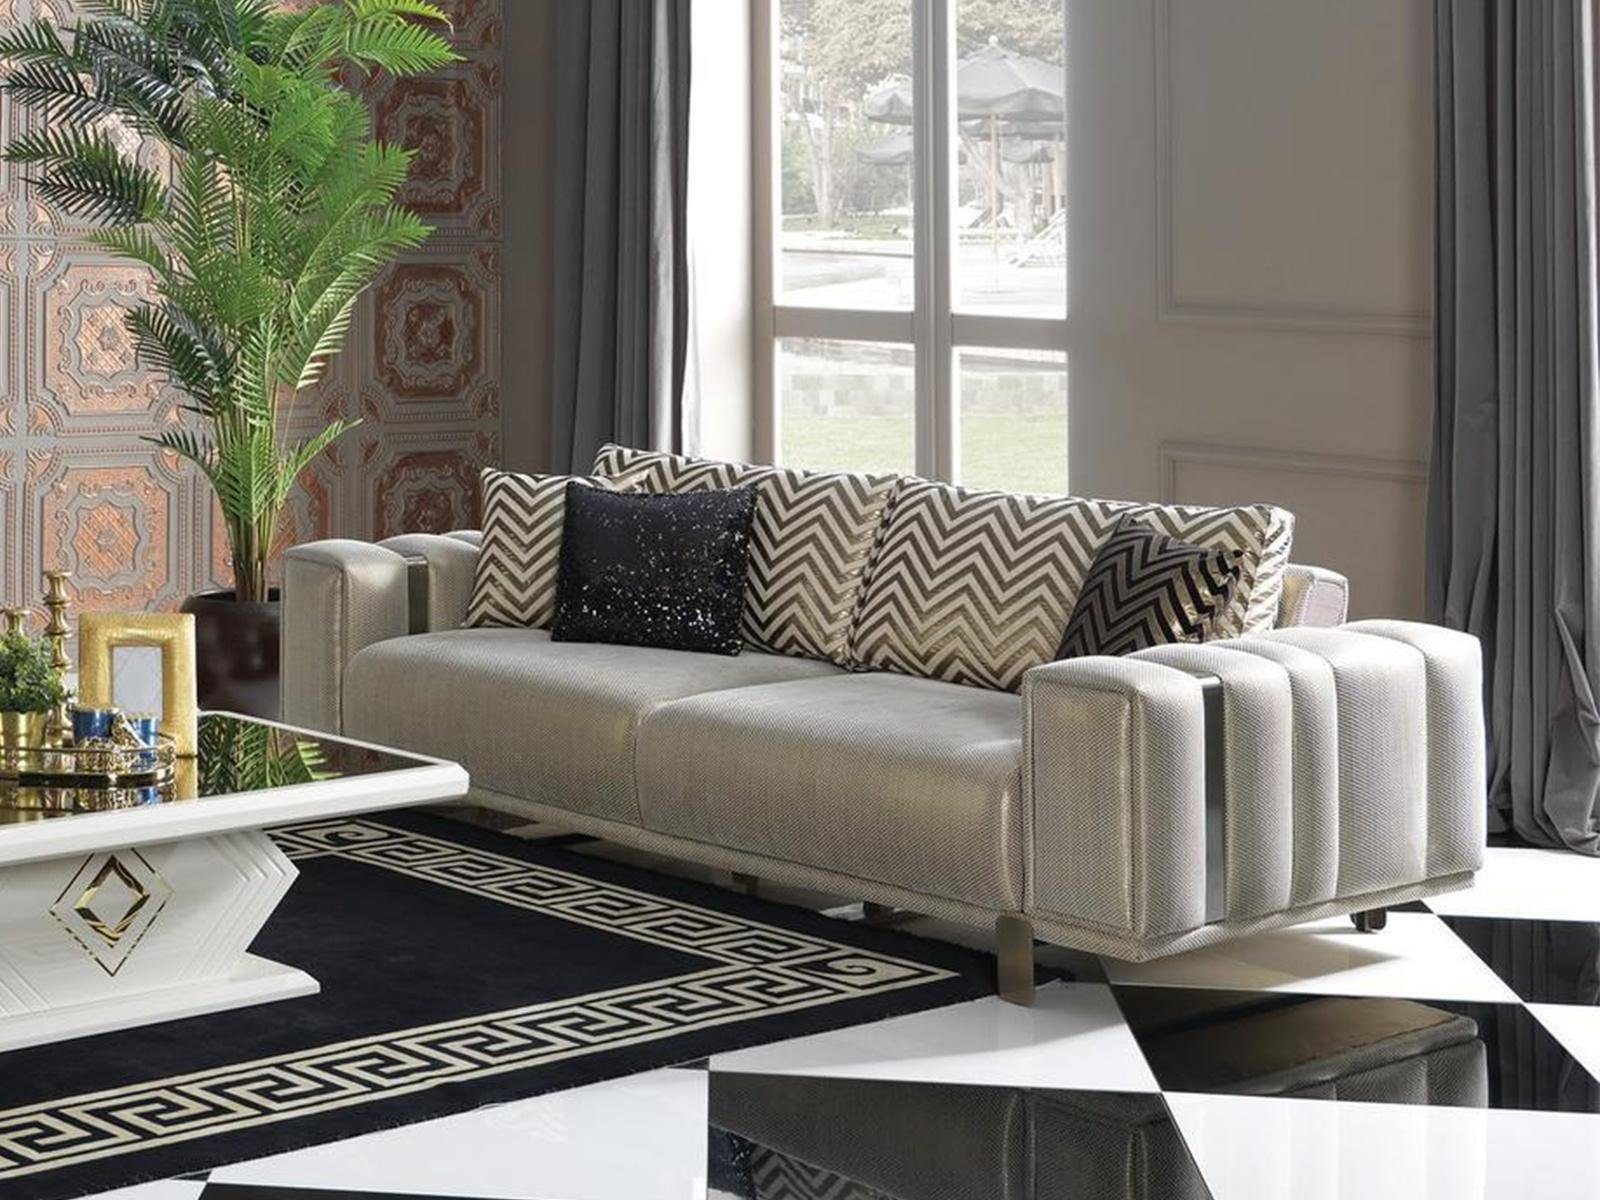 JVmoebel 2-Sitzer Möbel Sofa 2 in Couchen, Design Wonzimmer Europa Teile, Zweisitzer Couch Sitzer Made 1